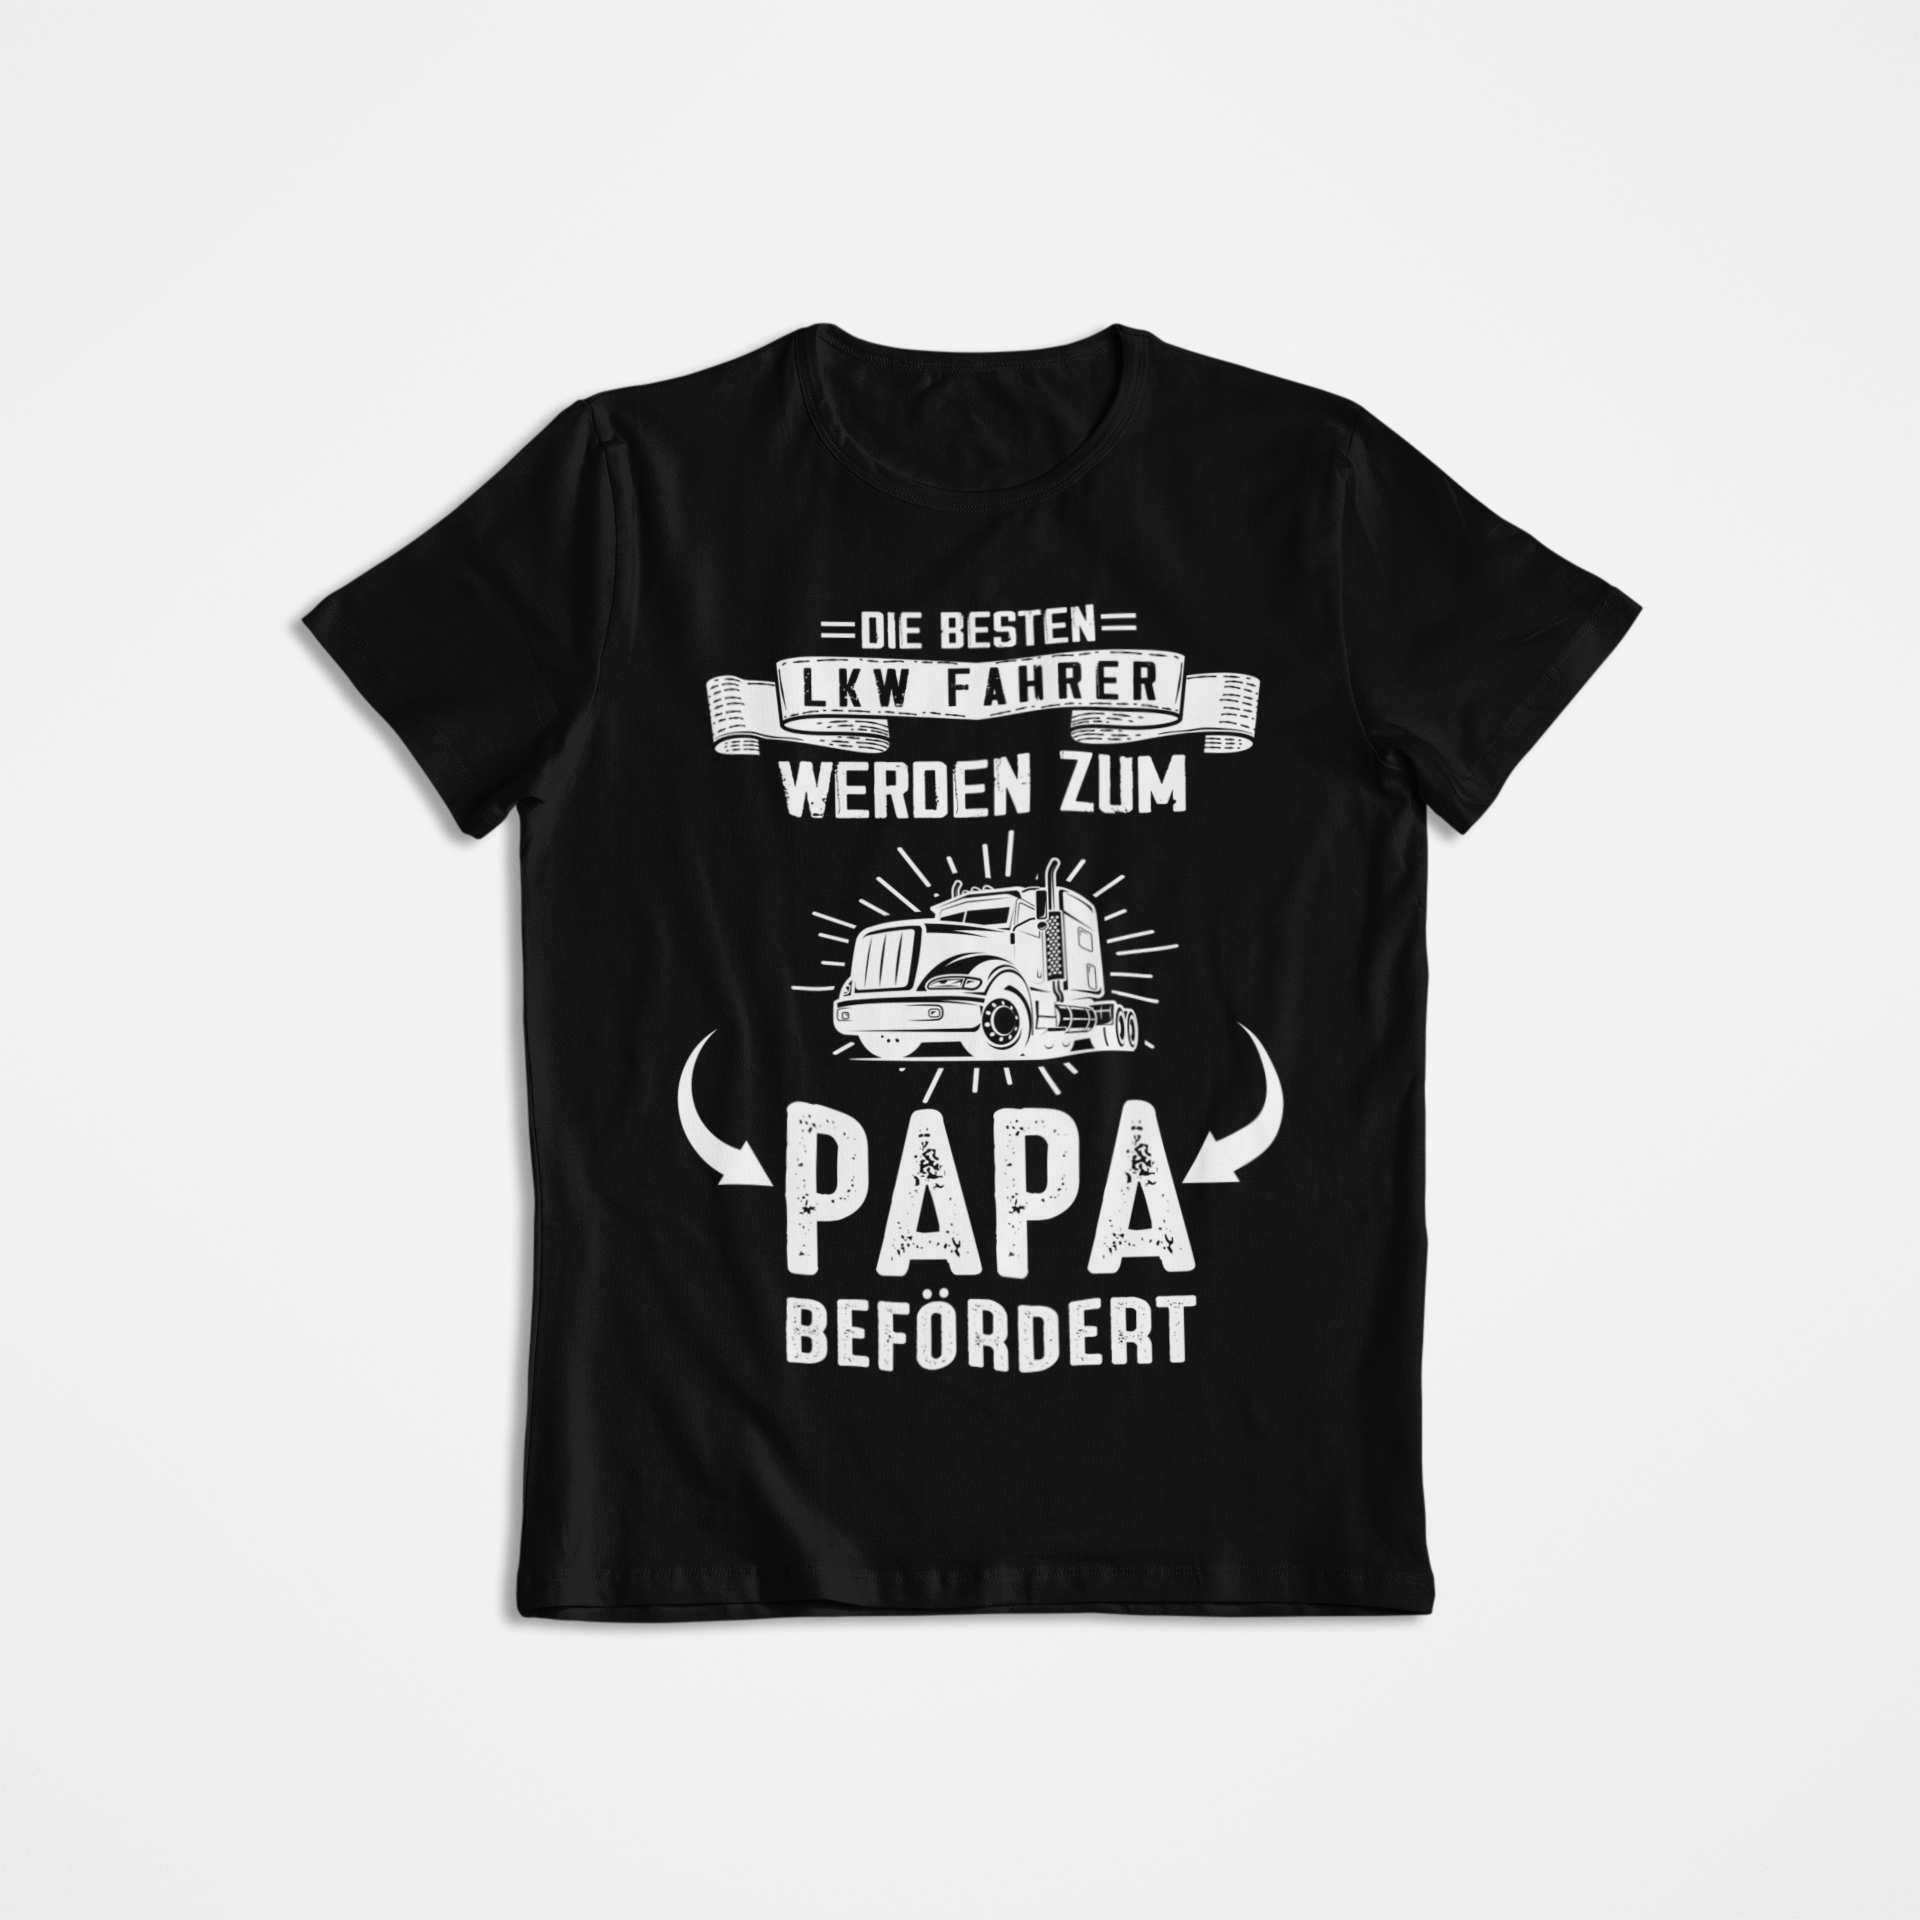 Papa befördert - T-Shirt